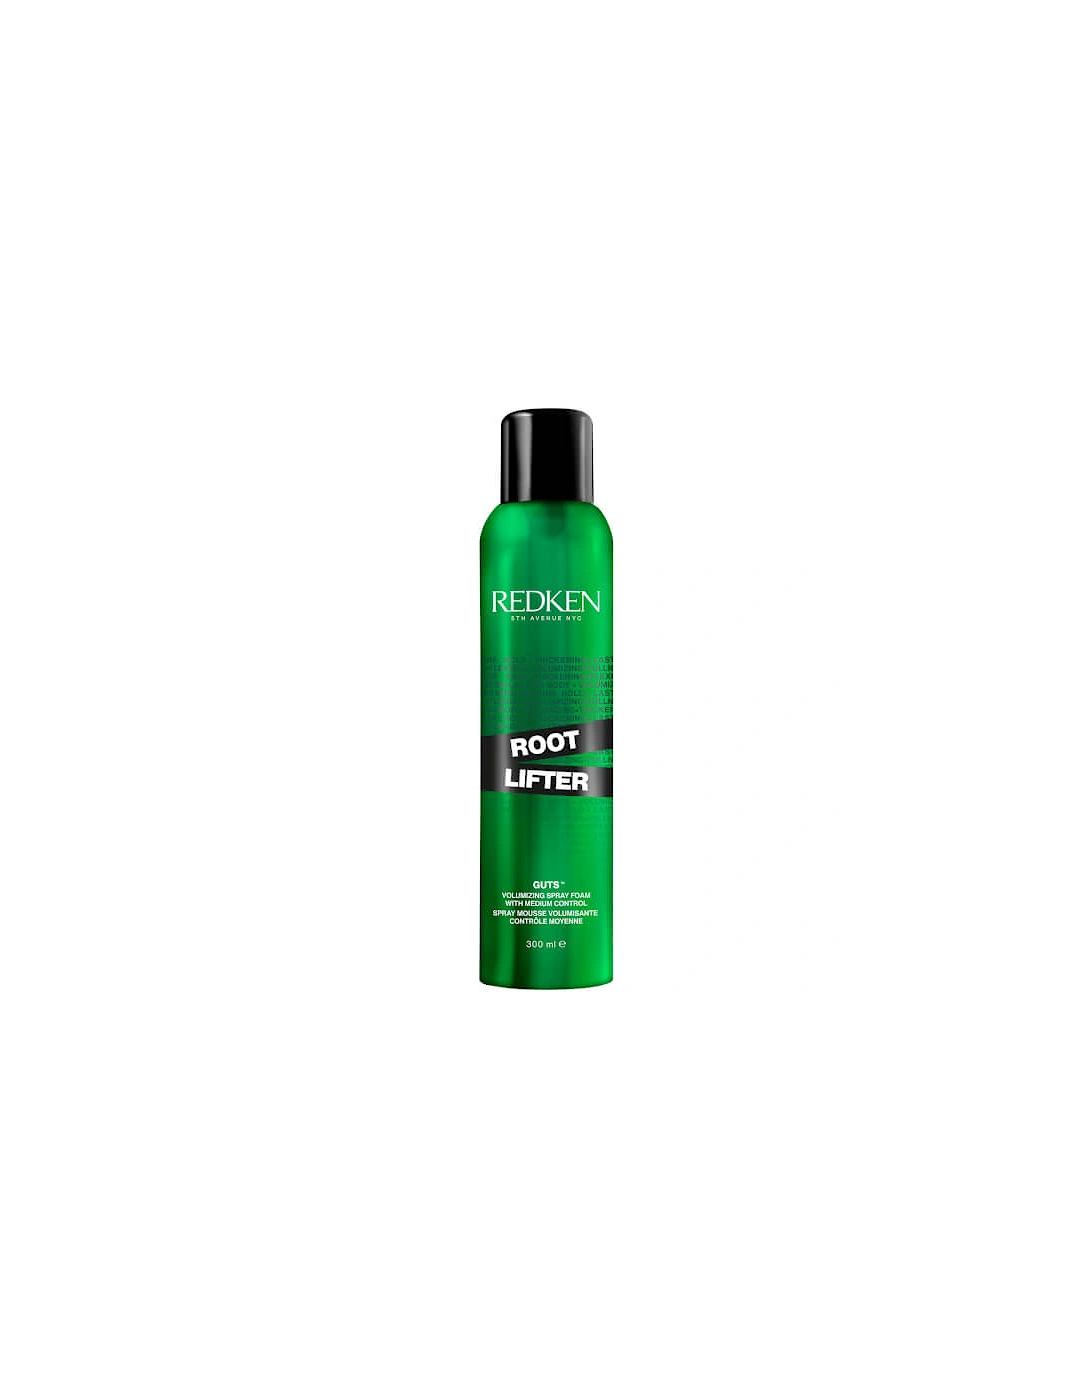 Root Lifting Volume Hair Spray 300ml - Redken, 2 of 1